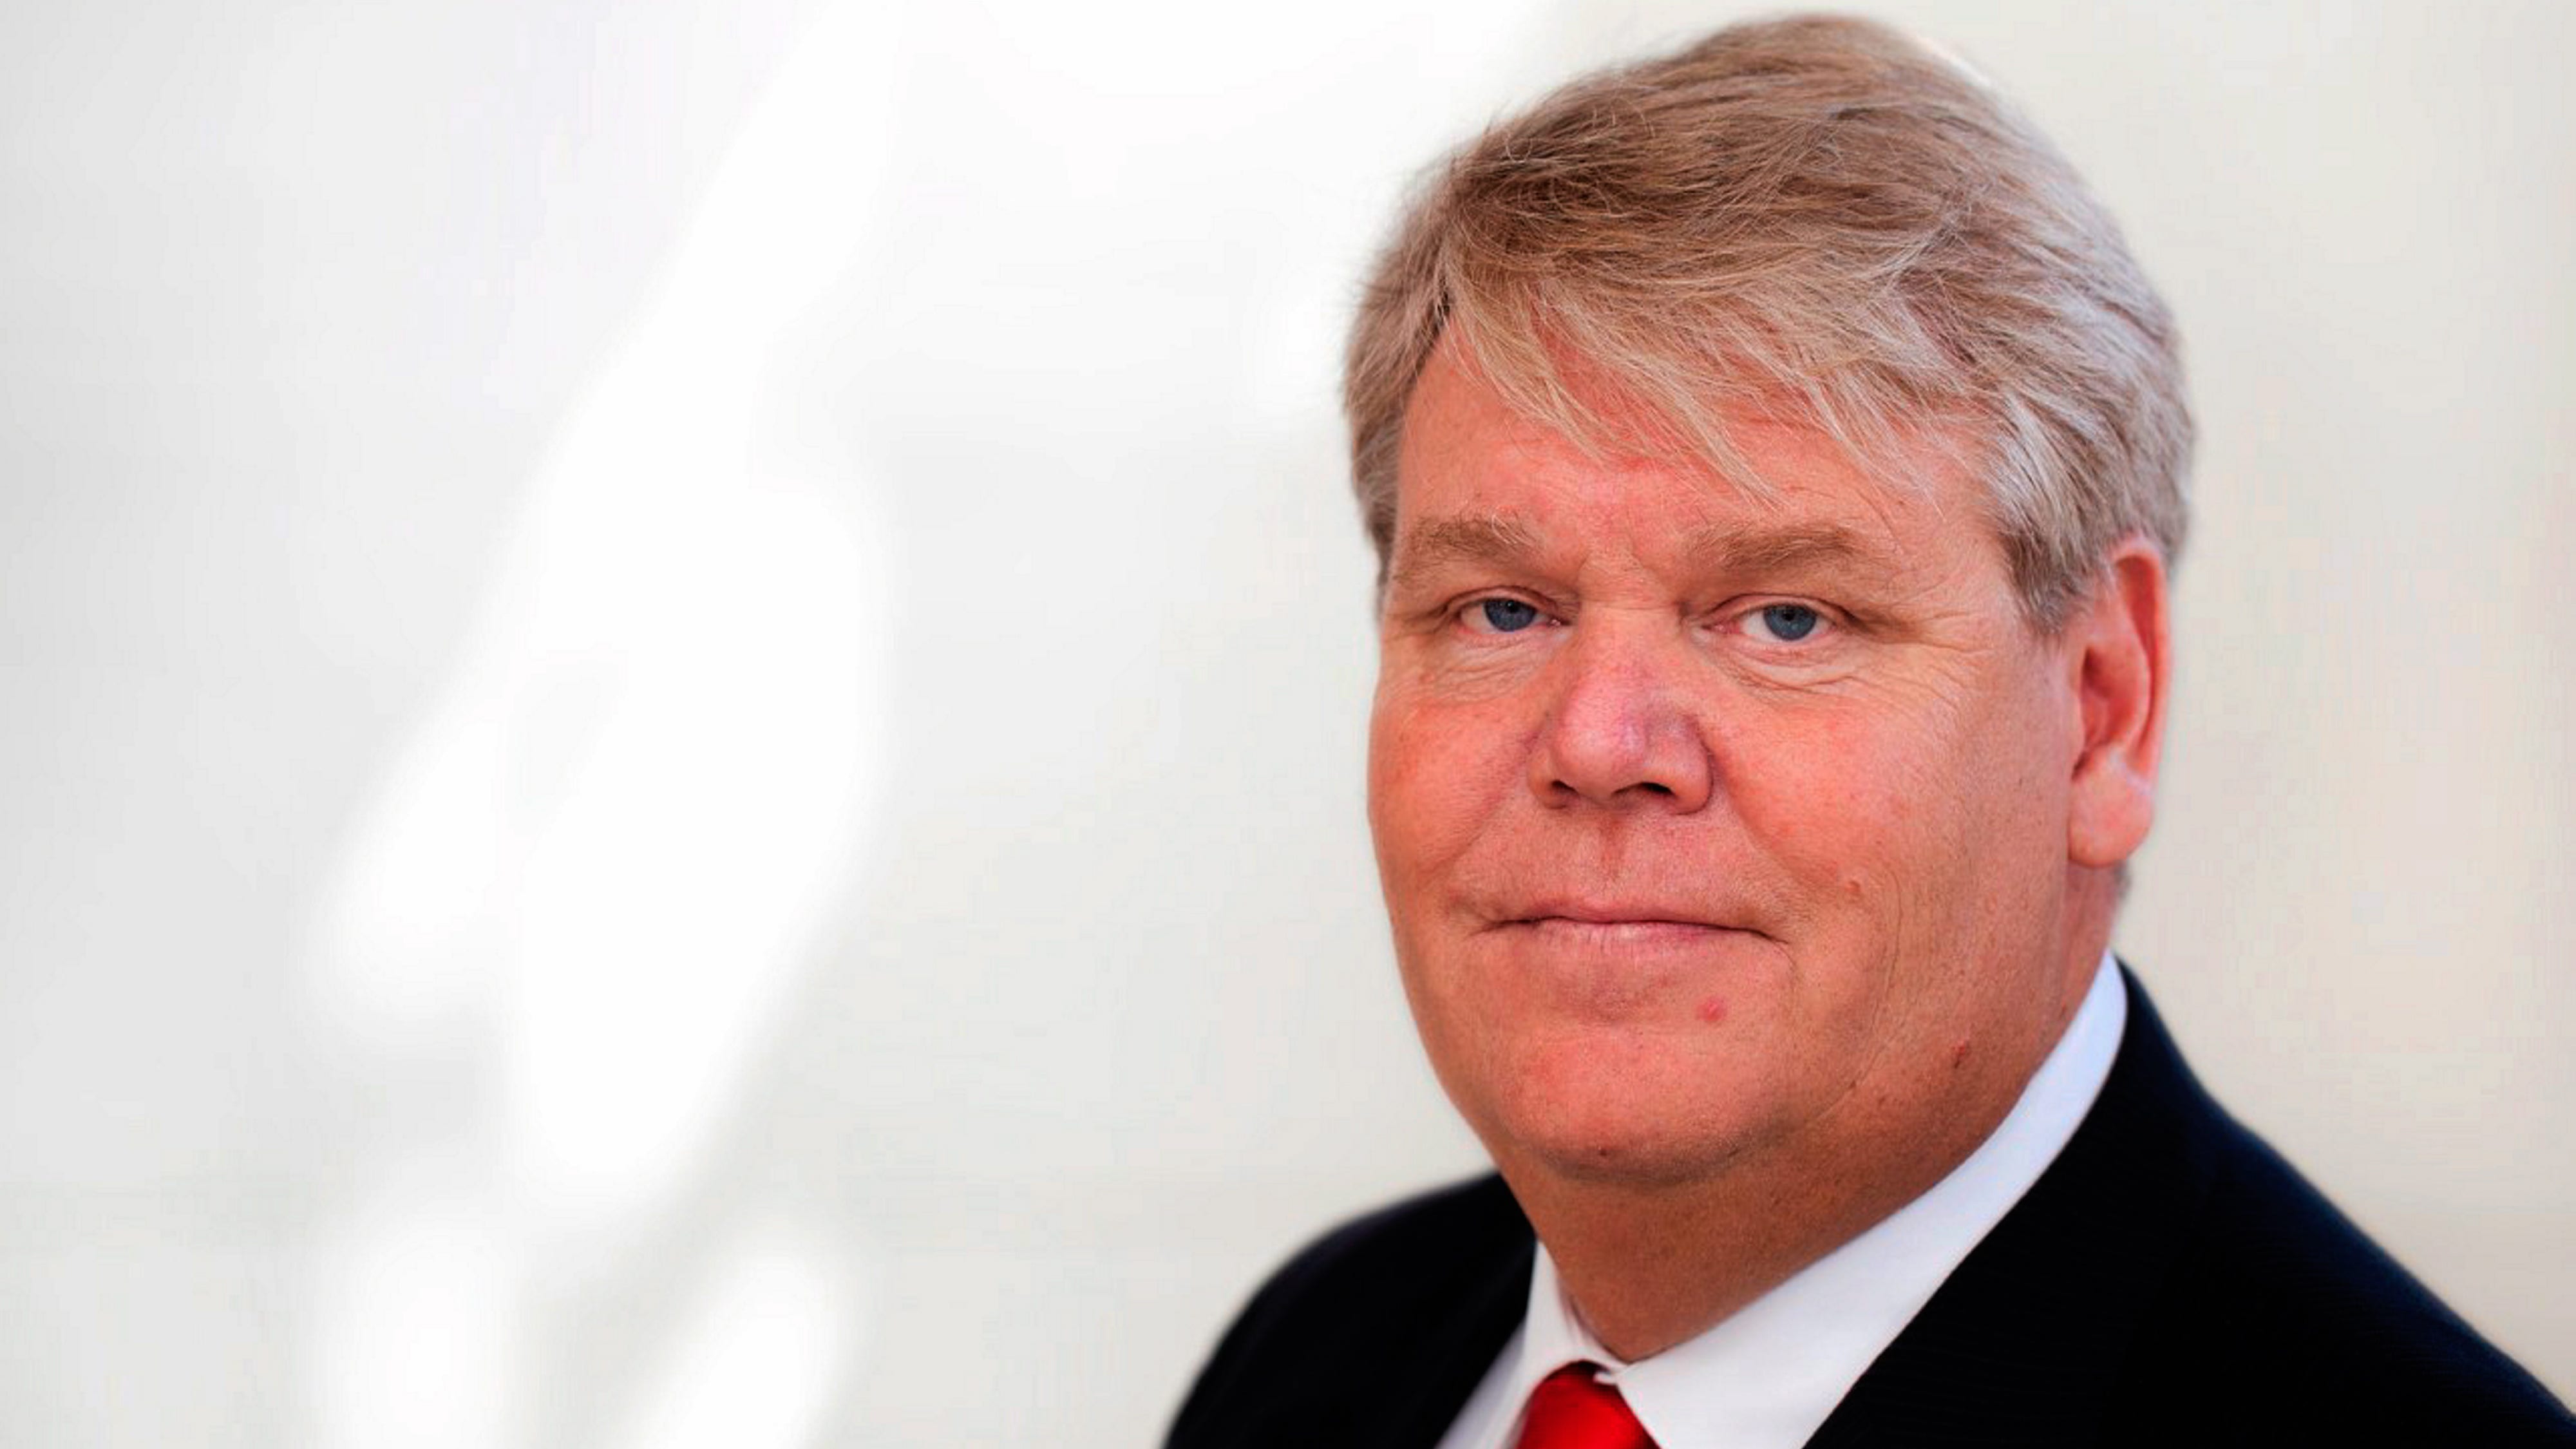 Bert Nordberg är ordförande i danska vindkraftbolaget Vestas, och har utsetts till Nordens bästa styrelseordförande.